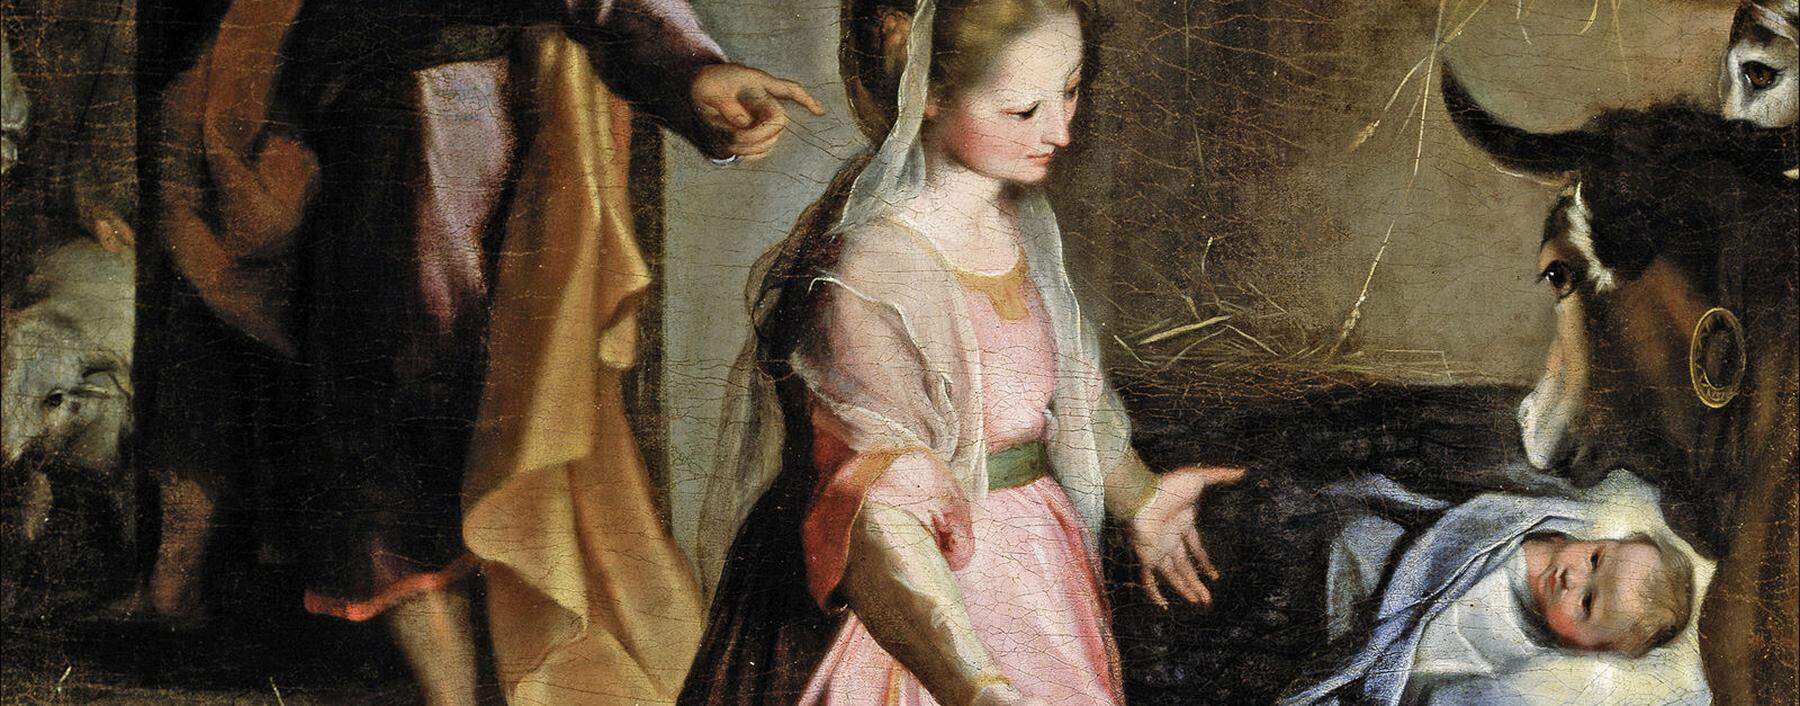 Der italienische Maler Federico Barocci wählte 1579 eine ungewöhnliche Darstellungsform für die Geburt von Jesus (Ausschnitt).